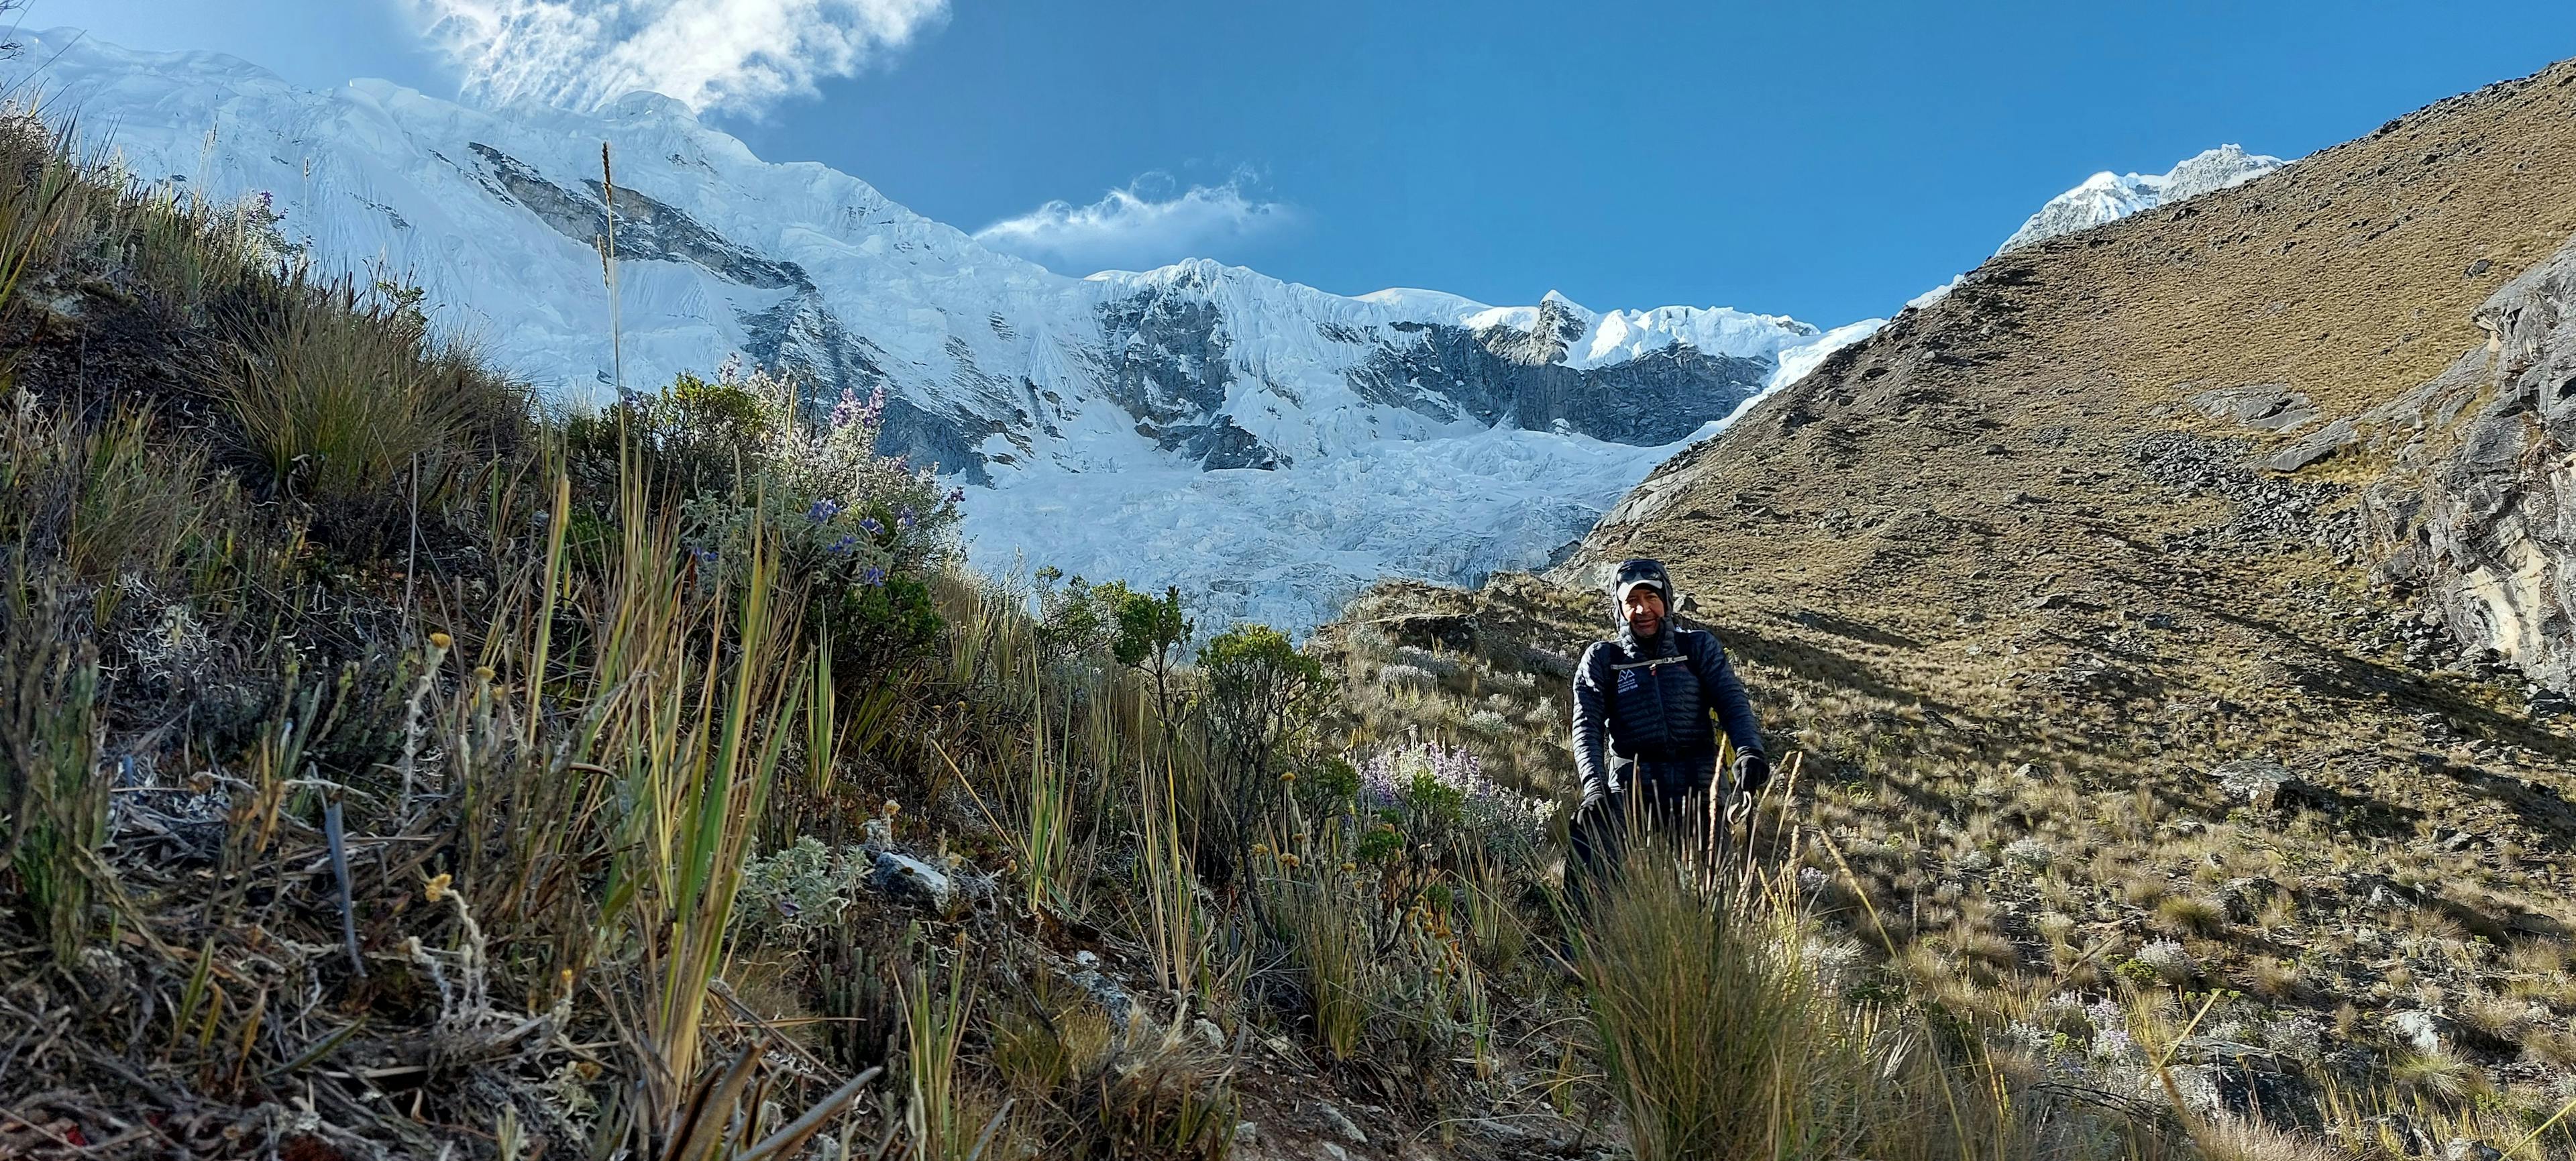 nevado chopicalqui - Lucio Huayhua Expeditions